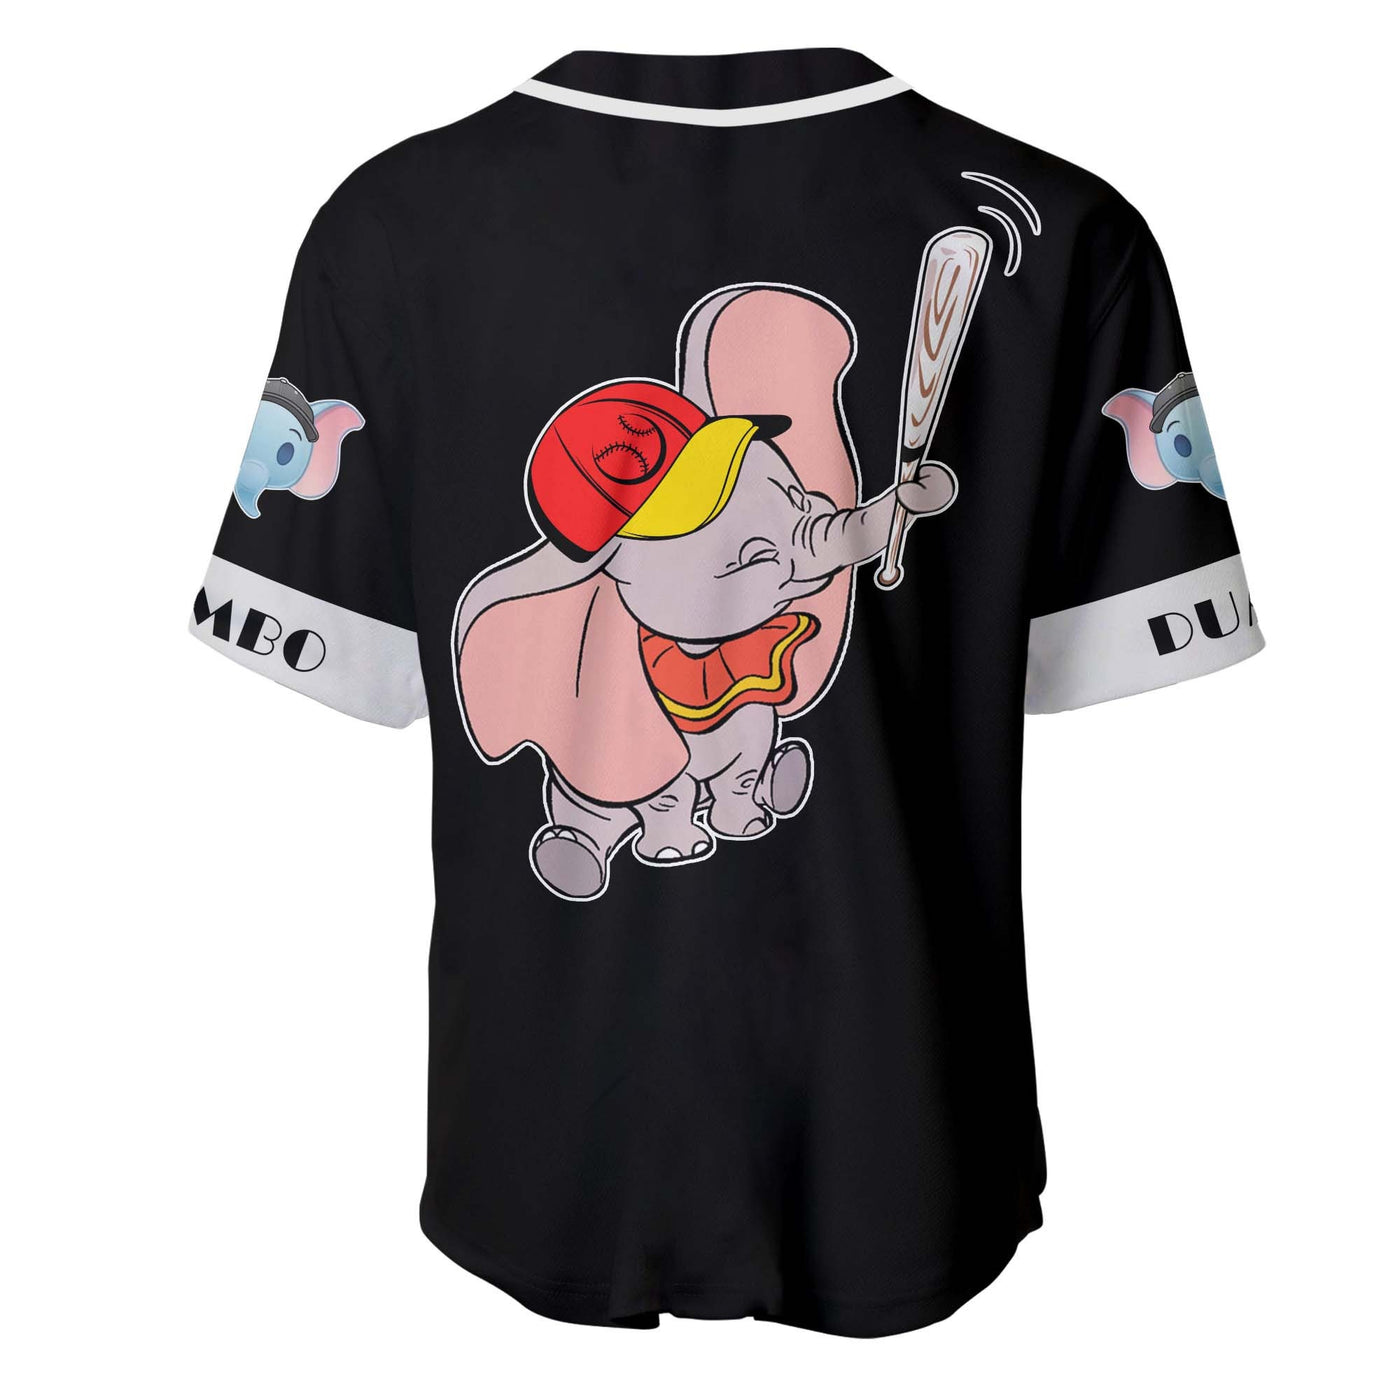 Dumbo Elephant Black White Disney Personalized Unisex Cartoon Custom Baseball Jersey